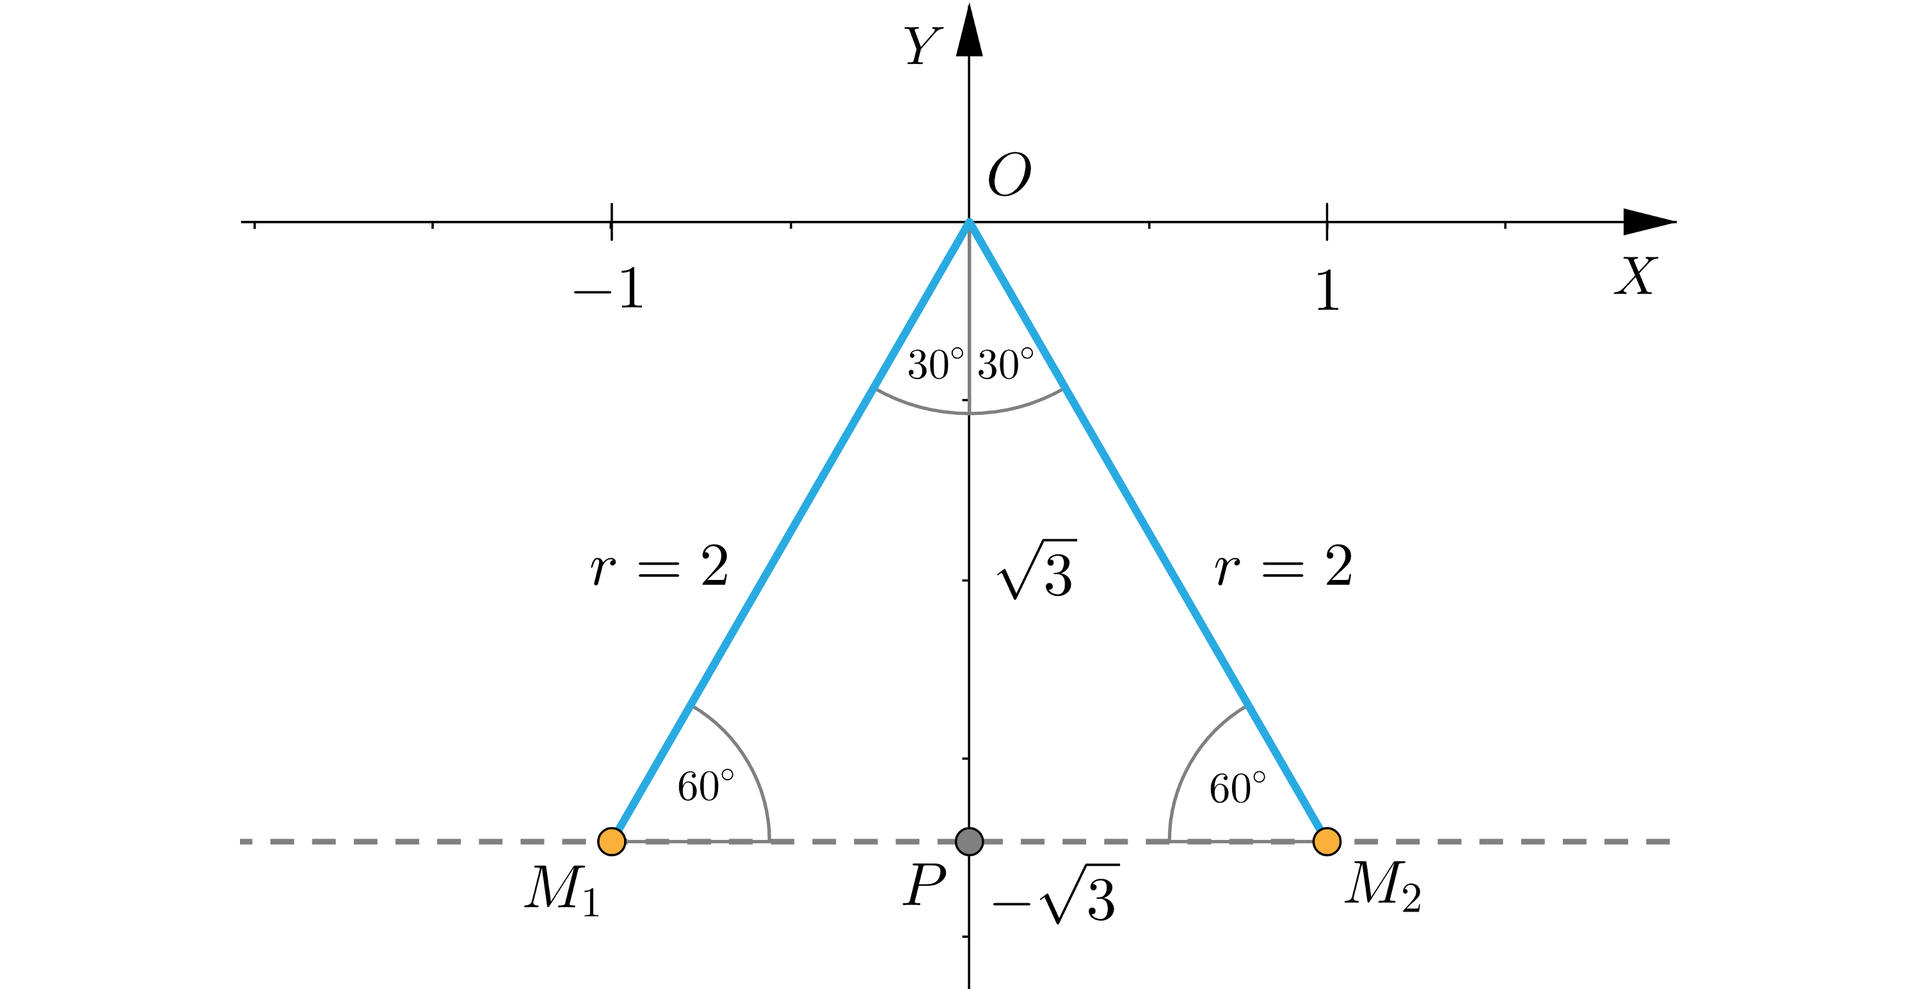 Ilustracja przedstawia układ współrzędnych z poziomą osią X oraz pionową Y. Rysunek skupia się głównie na trzeciej i czwartej ćwiartce układu. Punkt O to początek układu. Poprowadzone są z niego dwa odcinki, tworzące kąty ostre z ujemną półosią O Y. Punkt M 1 ma współrzędne minus 1, minus pierwiastek z trzech. Odcinek O M 1 znajduje się w trzeciej ćwiartce układu i ma długoś r równą 2. Punkt M 2 ma współrzędne 1, minus pierwiastek z trzech. Odcinek O M 2 znajduje się w czwartej ćwiartce układu i również ma długość r równą dwa. Przez punkty M 1 i M 2 linią przerywaną poprowadzona jest pozioma prosta, która jest prostopadła do osi Y i przecina ją w punkcie P o współrzędnych 0, minus pierwiastek z trzech. Odcinek O P leży więc na osi Y i ma długość równą pierwiastek z trzech. Na rysunku zaznaczone są także kąty. Kąt między odcinkiem M 1 P a odcinkiem M 1 O wynosi 60 stopni. Kąt między odcinkiem M 1 O a O P wynosi 30 stopni. Kąt między odcinkiem M 2 P a odcinkiem M 2 O wynosi 60 stopni. Kąt między odcinkiem M 2 O a O P wynosi 30 stopni.